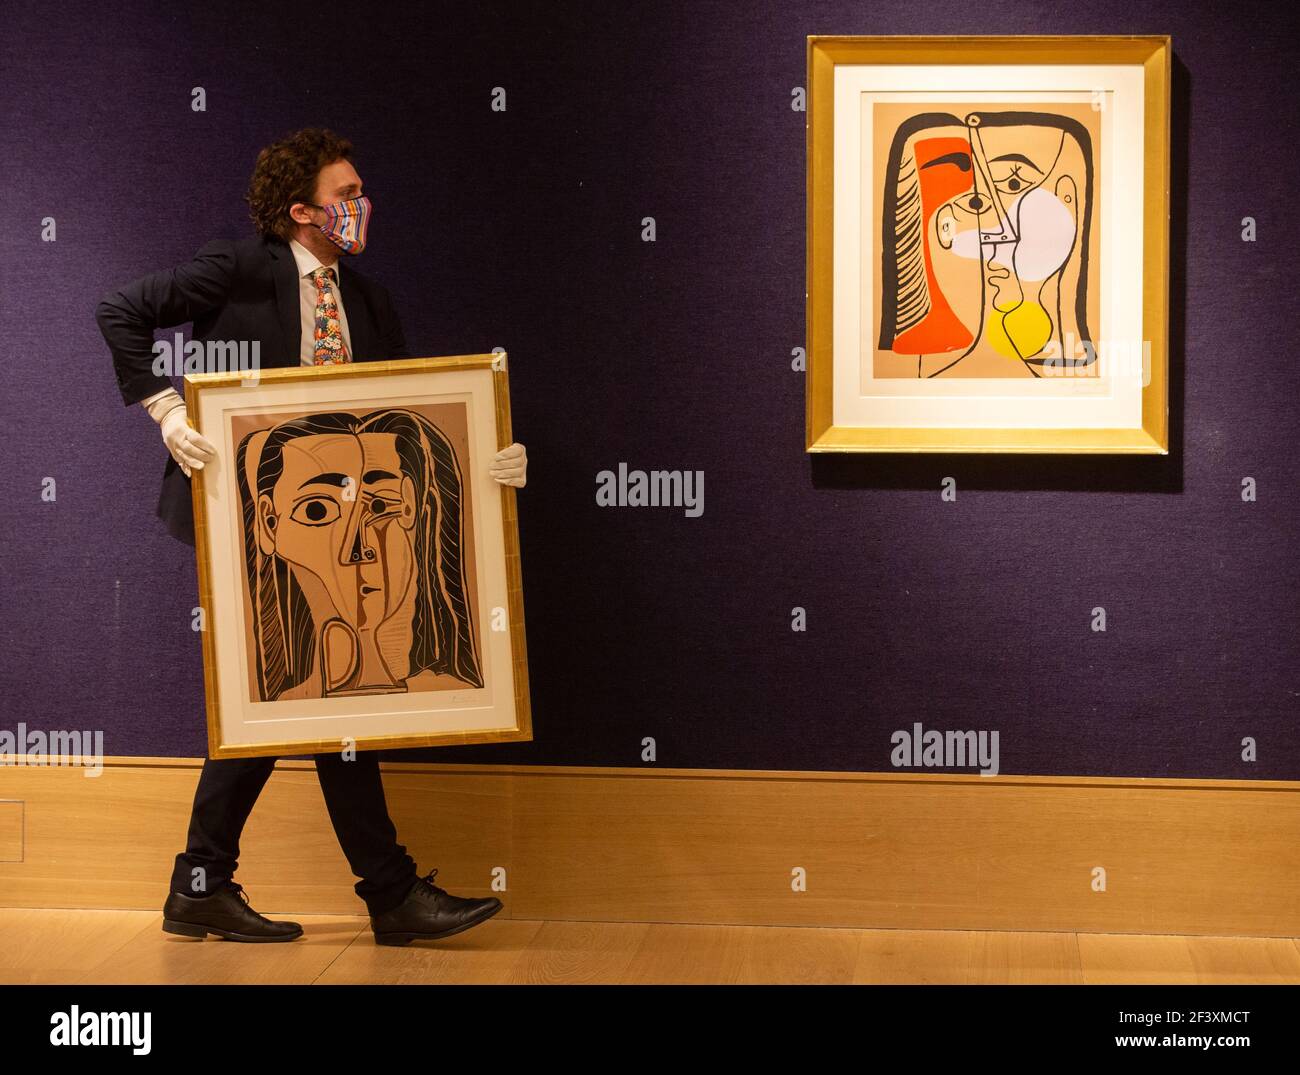 London, UK. 18th Mar, 2021. 'Jacqueline au Bandeau de Face', 1962 (left)  est £60,000-80,000 and 'Portrait de Jacqueline aux Cheveux Lisses', 1962,  est £90,000-£120,000 by Pablo Picasso. This is part of the '